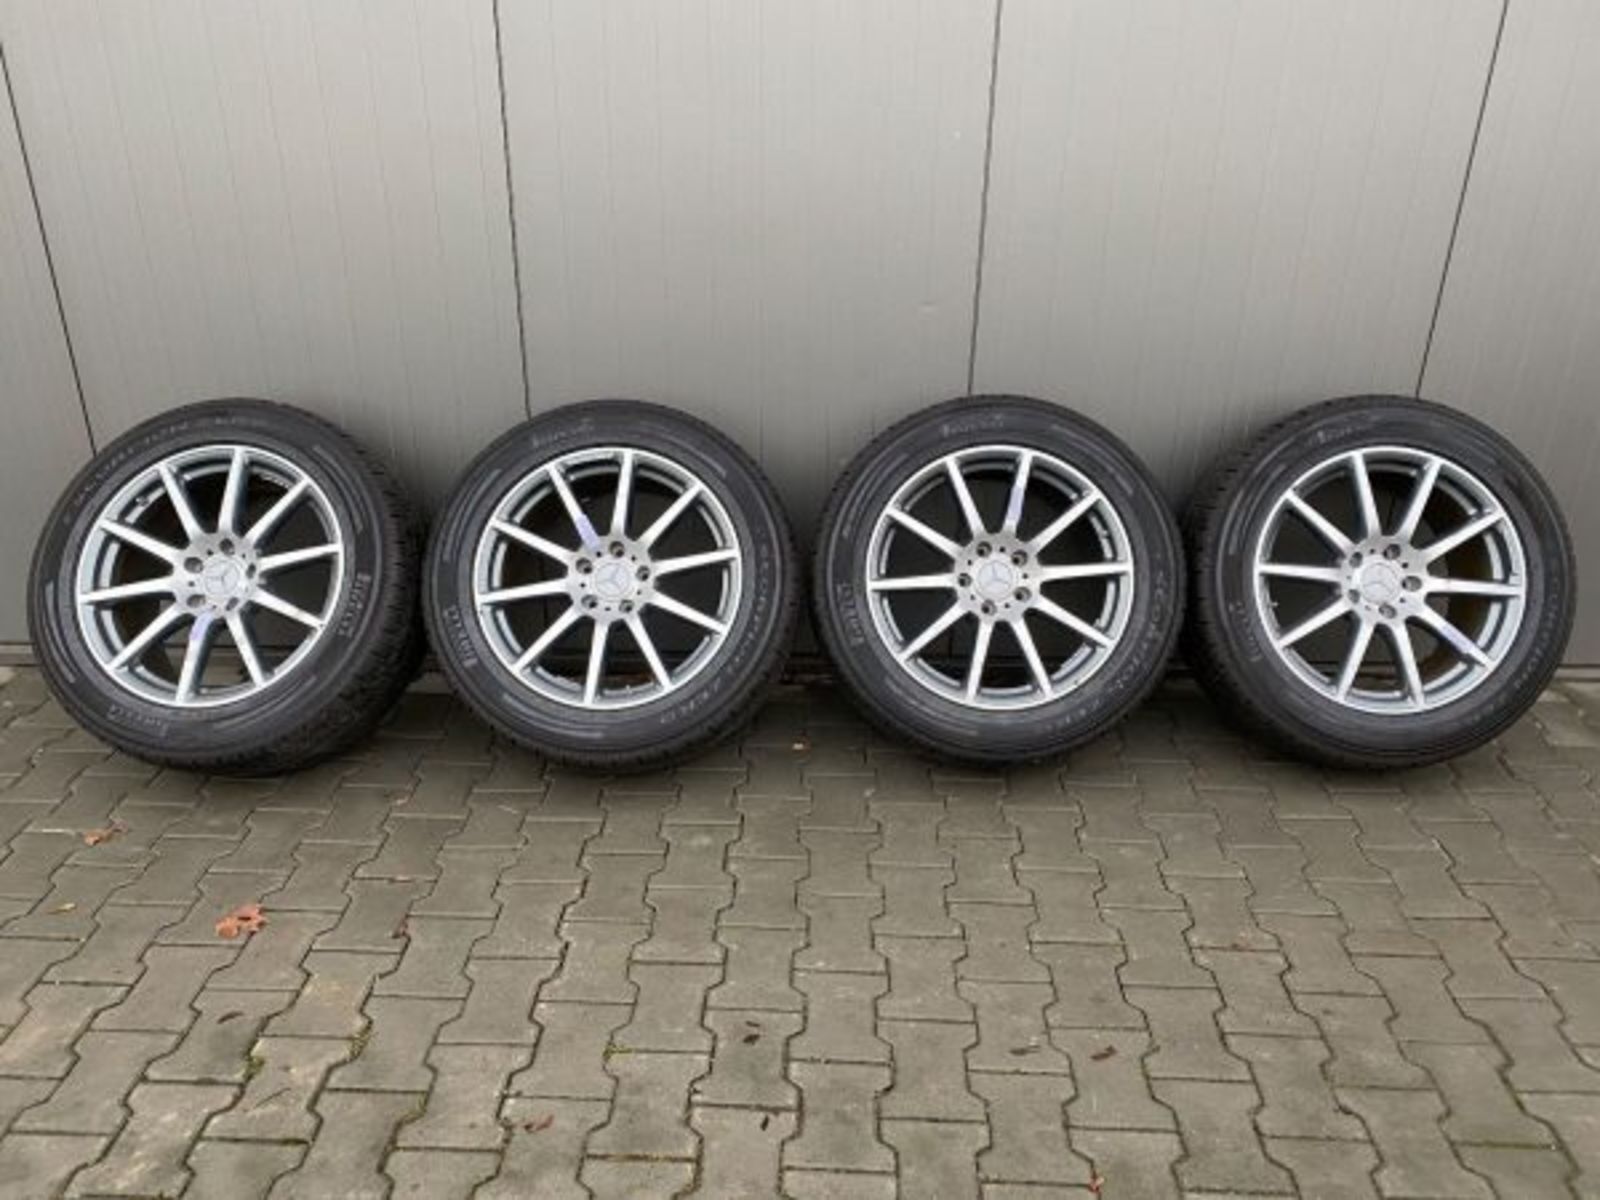 MERCEDES G63 G KLASSE Rader satz wheels set 20 inch 354830089339 2